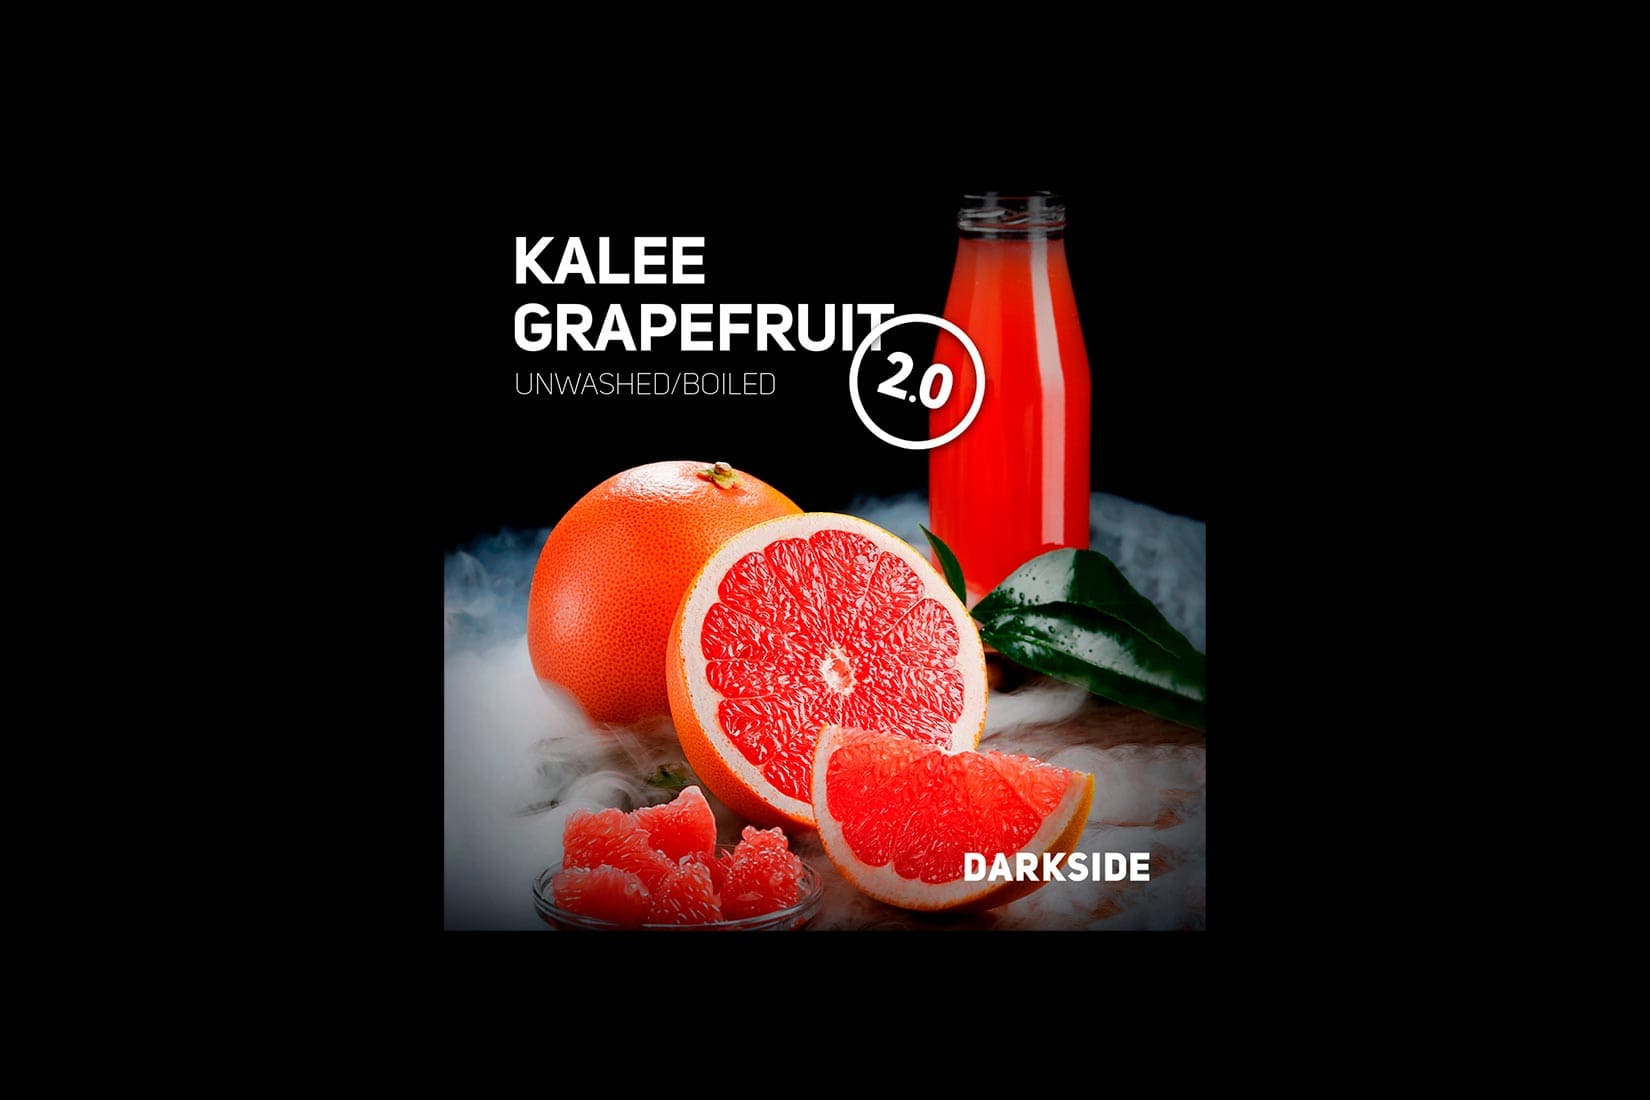 Табак для кальяна DARKSIDE KALEE GRAPEFRUIT 2.0 (Грейпфрут) – описание, миксы, отзывы